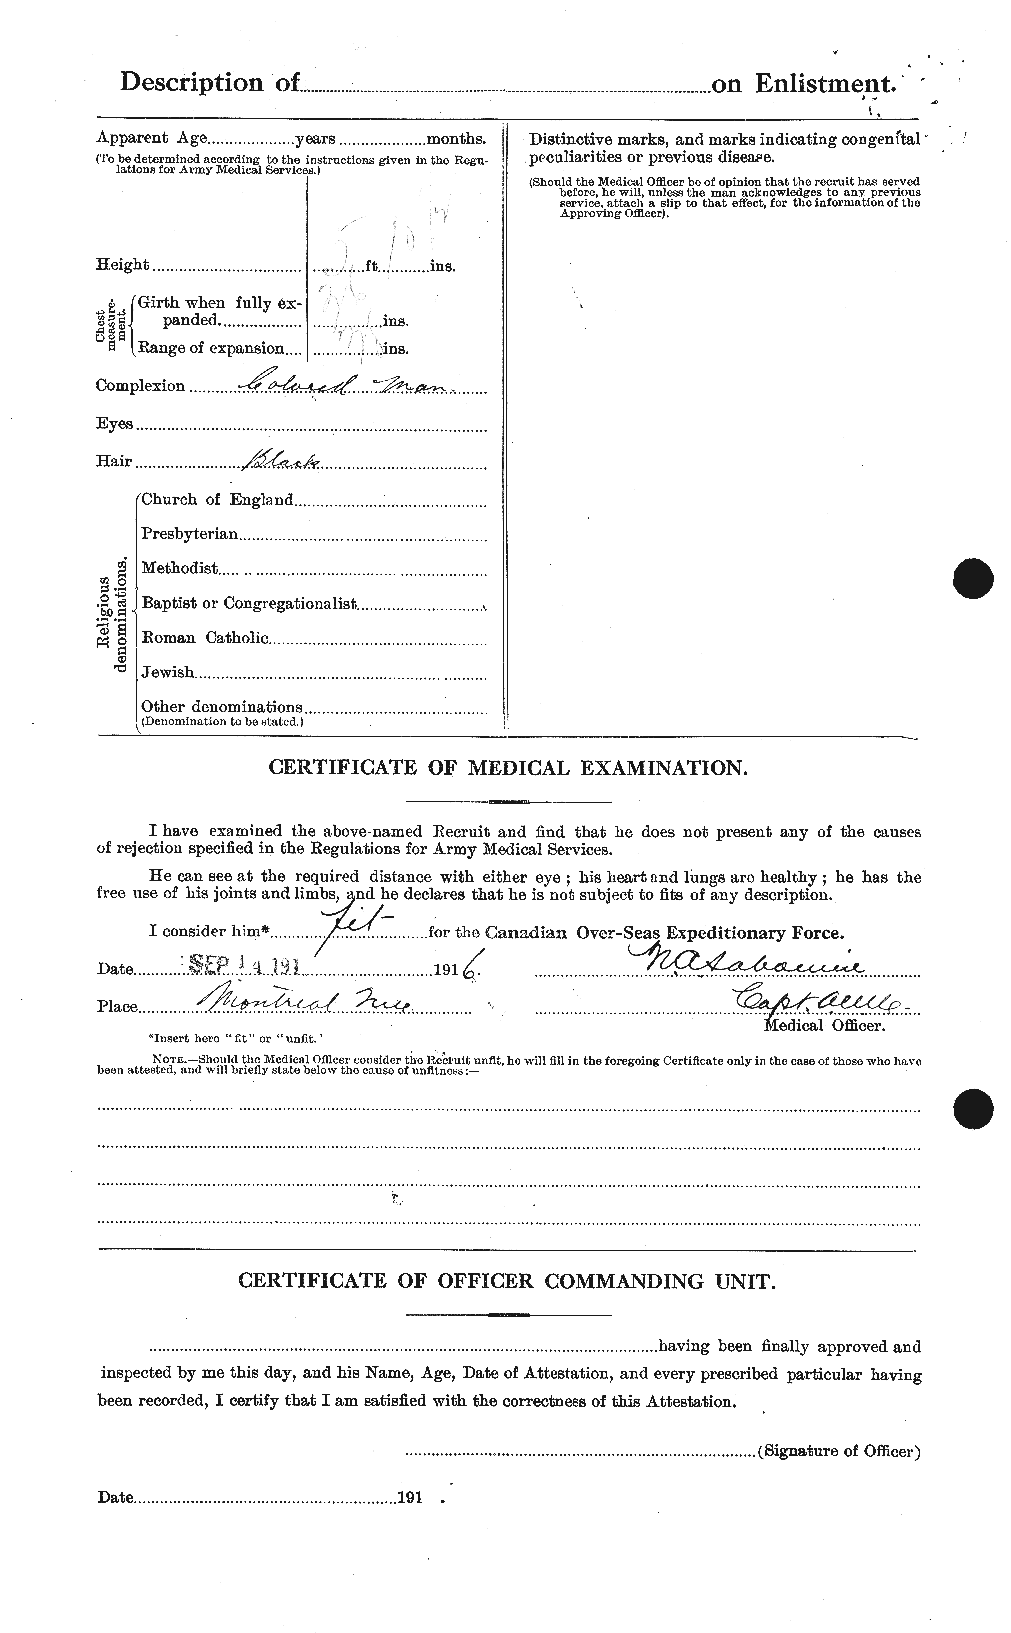 Dossiers du Personnel de la Première Guerre mondiale - CEC 085953b